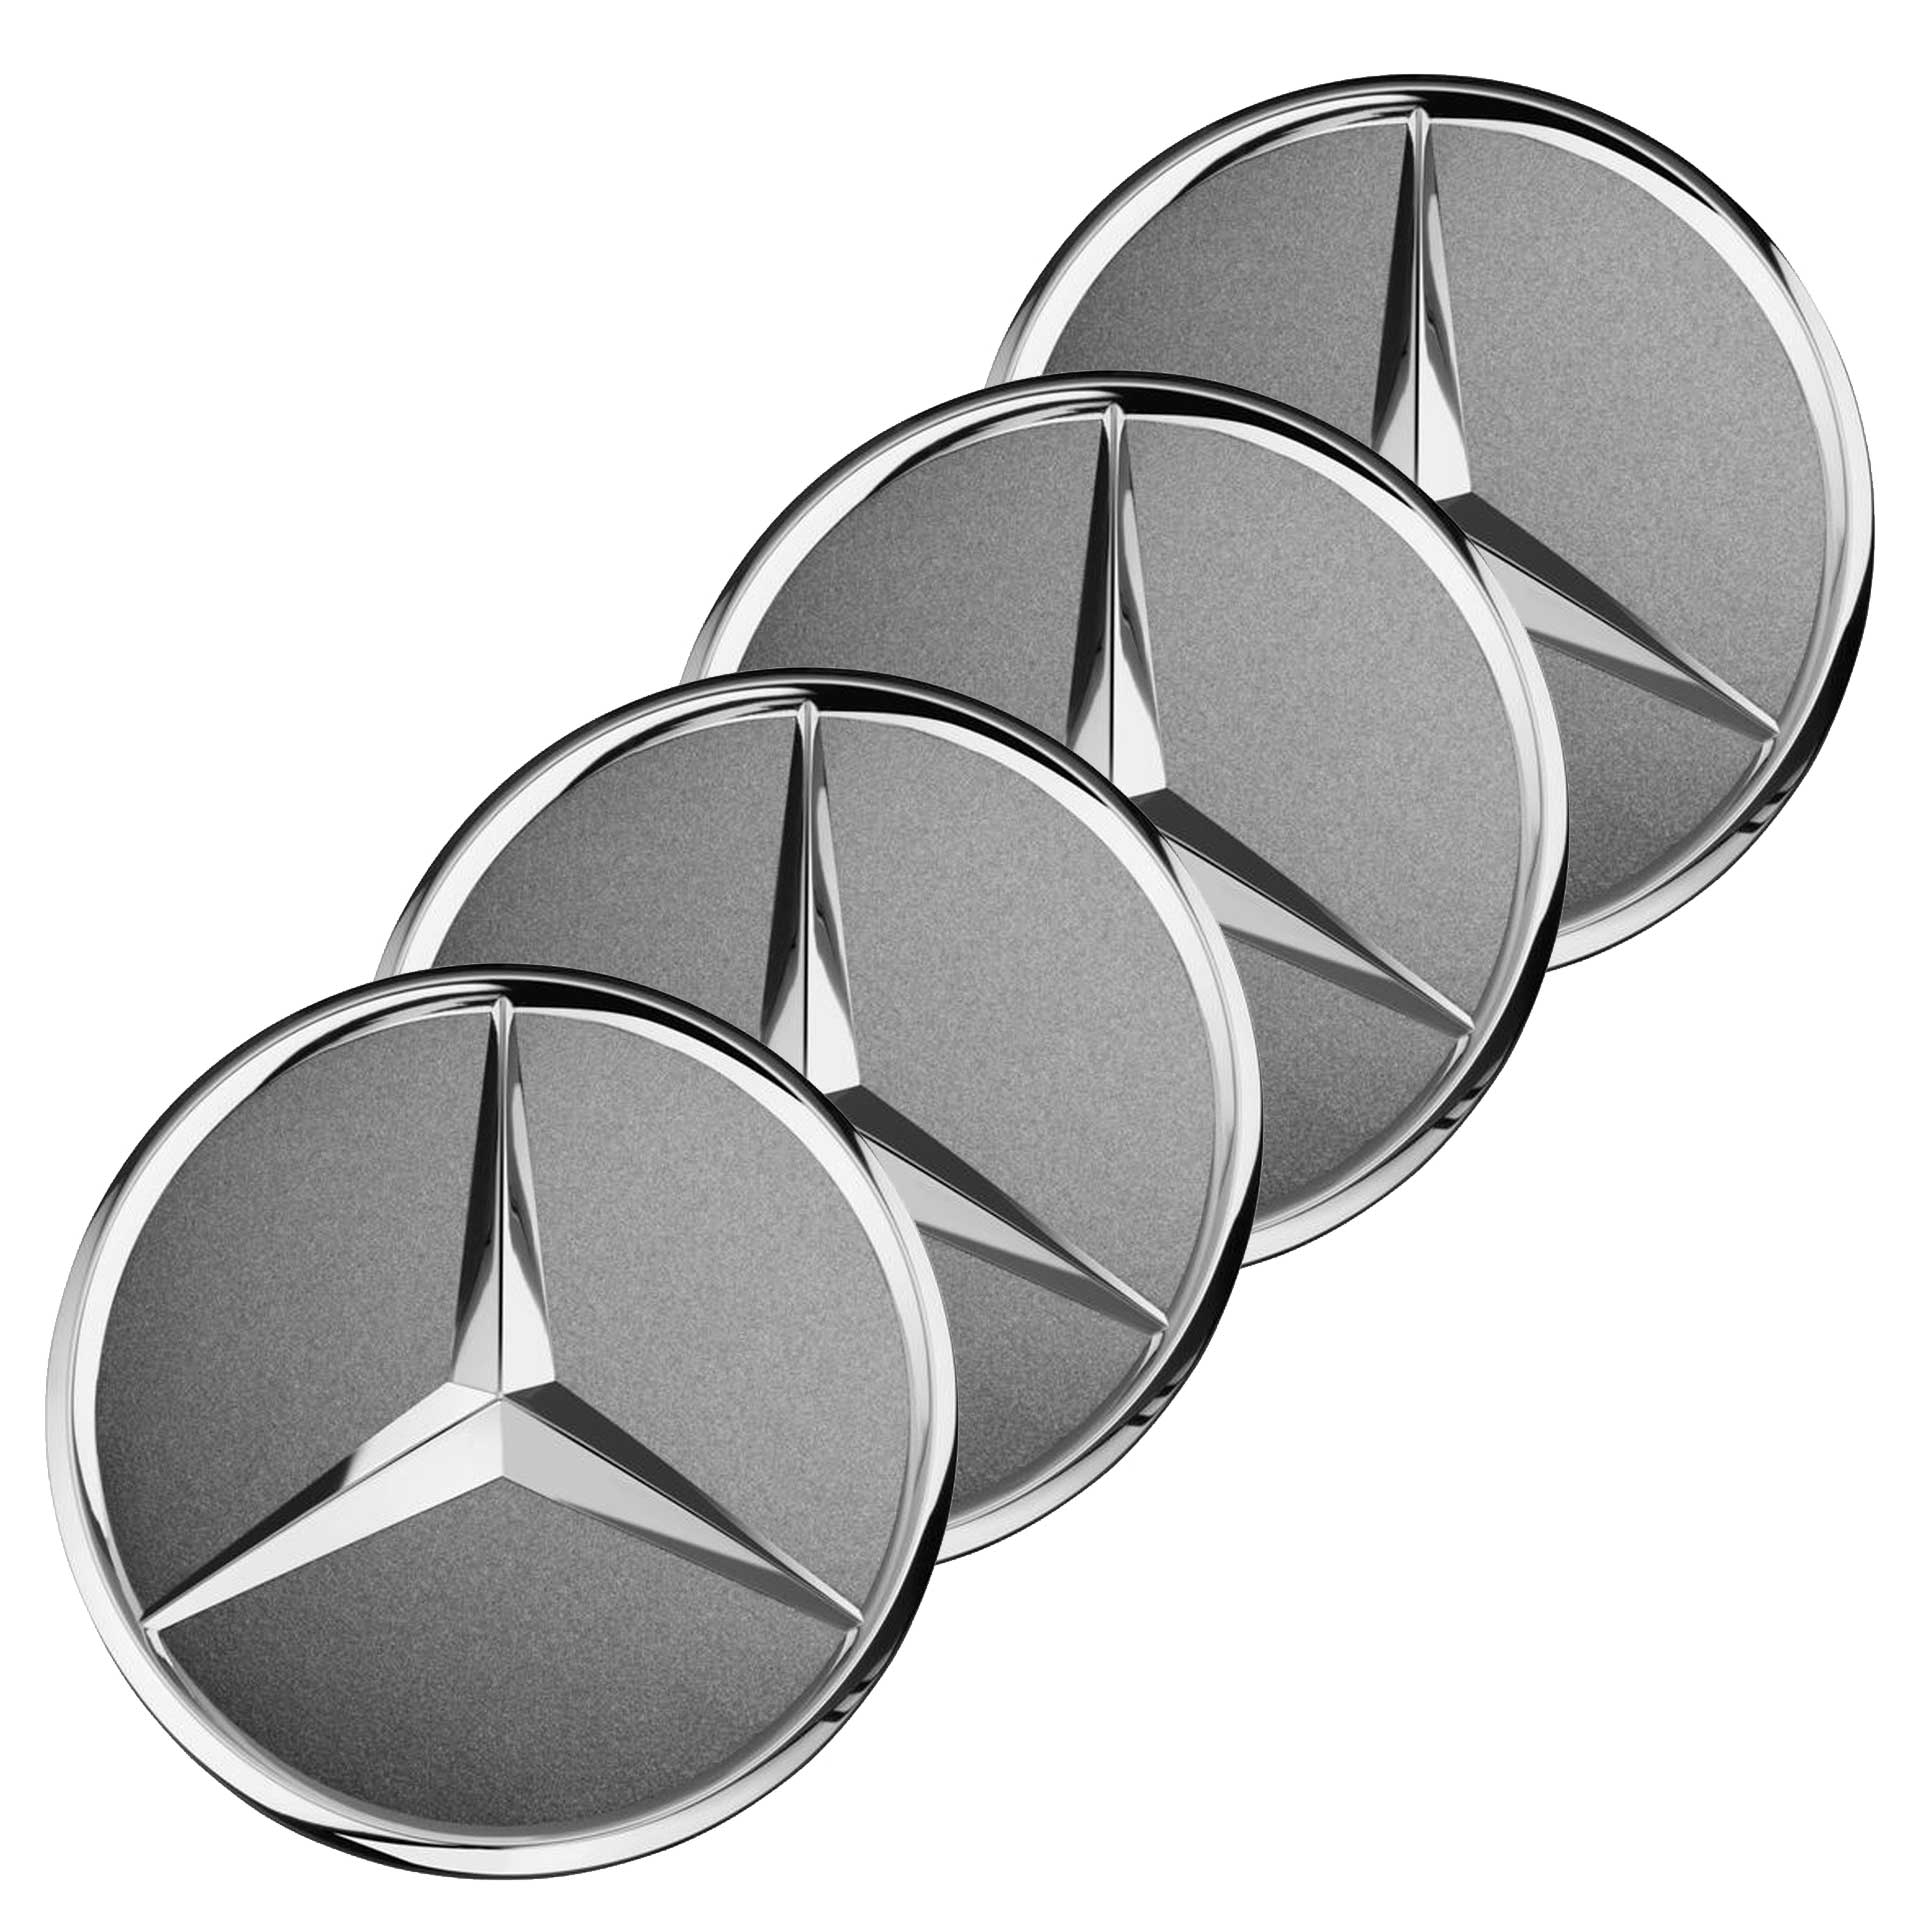 Mercedes-Benz Radnabenabdeckung Stern Himalayagrau 4-teiliger Satz